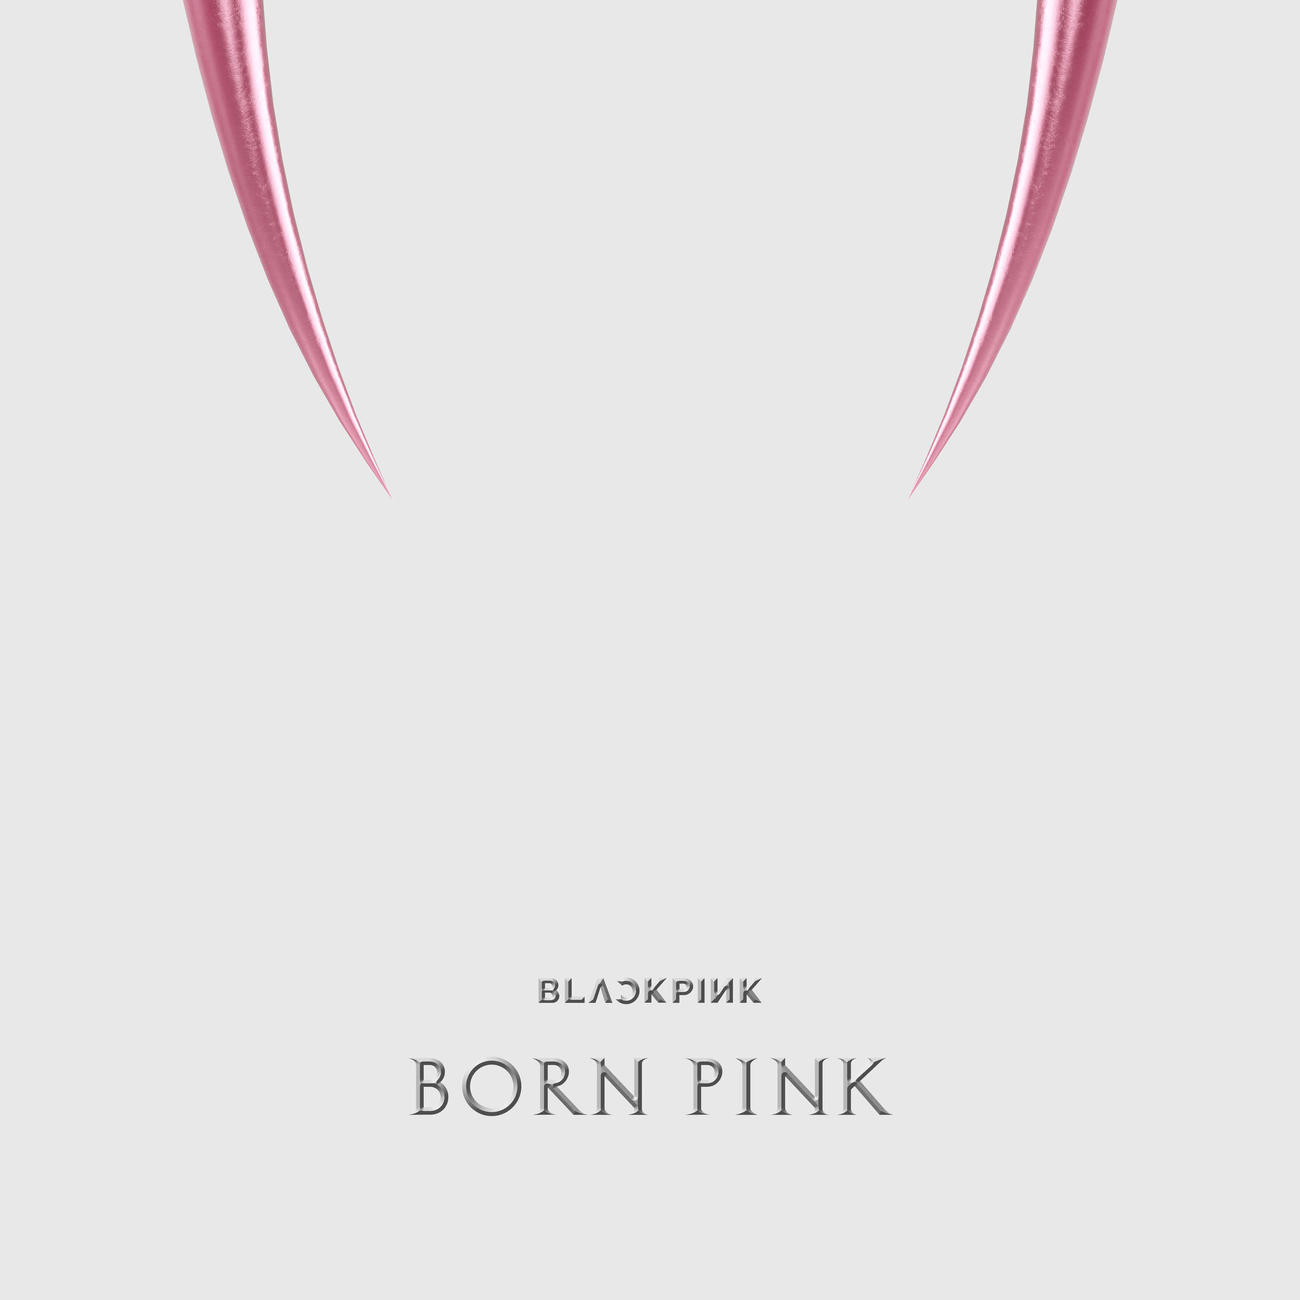 「ビルボード200」で首位に輝いたBLACKPINKの「BORN PINK」